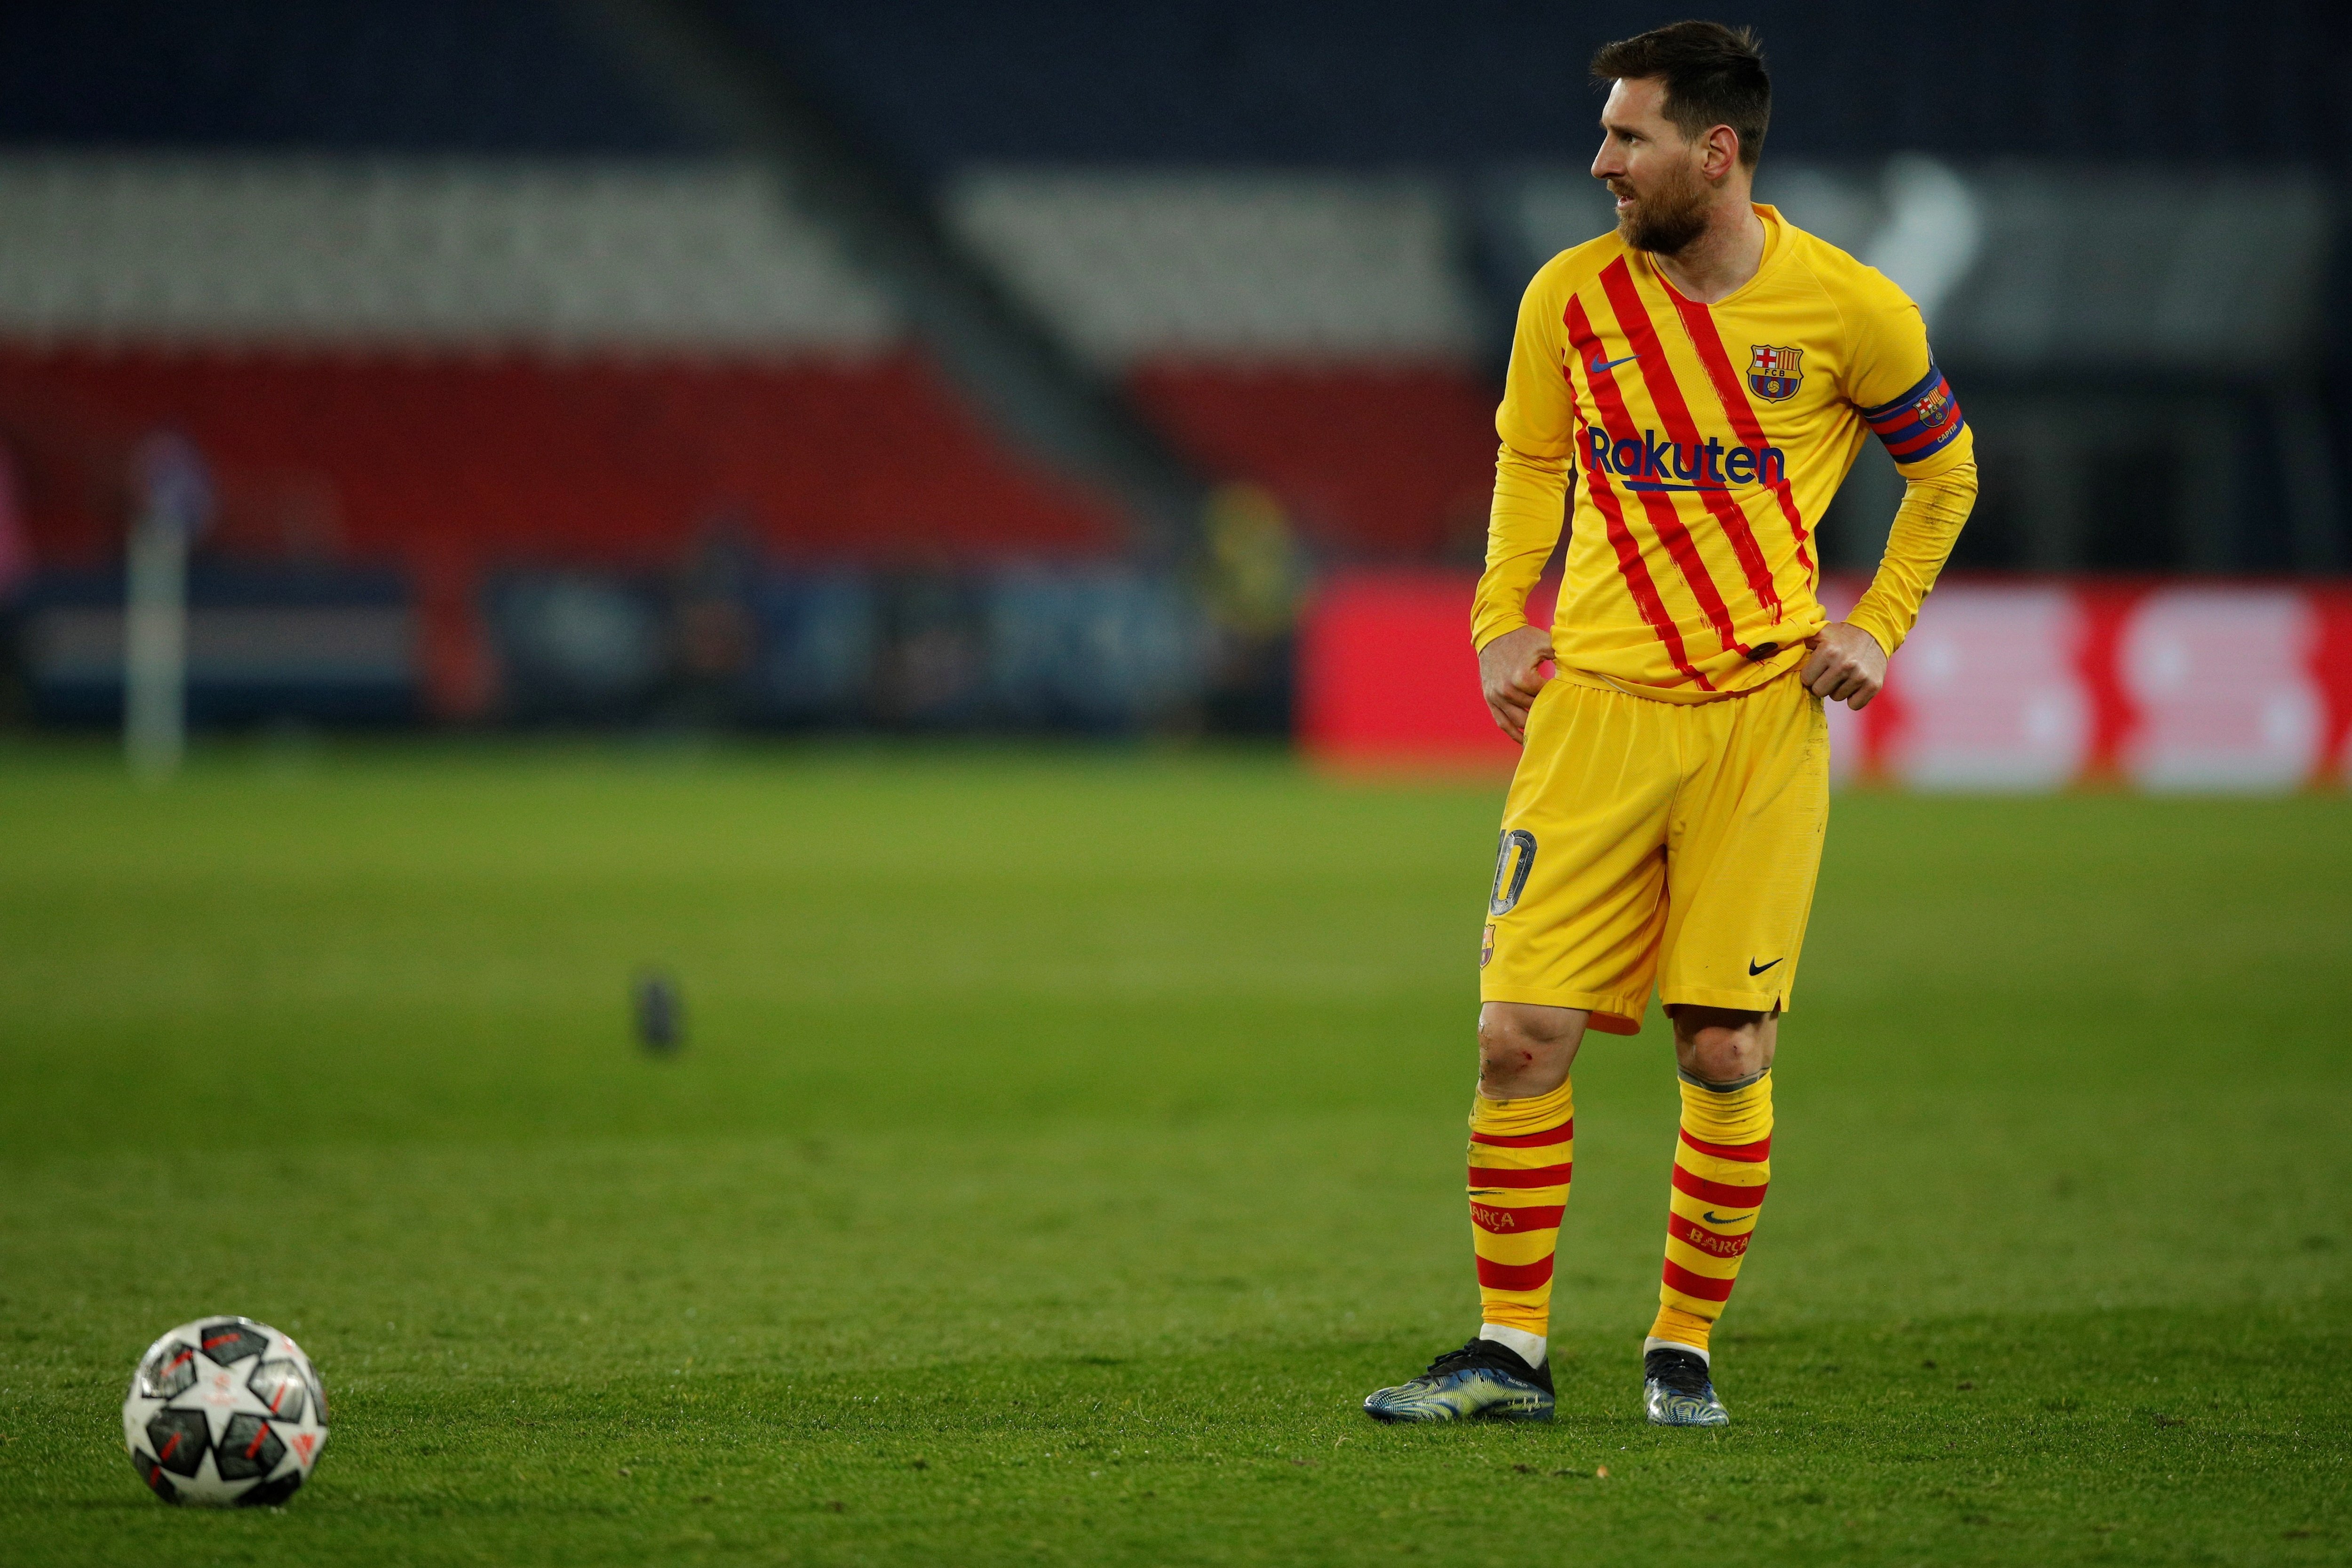 ¿Crees que Messi tendría que llevar el dorsal 30 en el PSG?